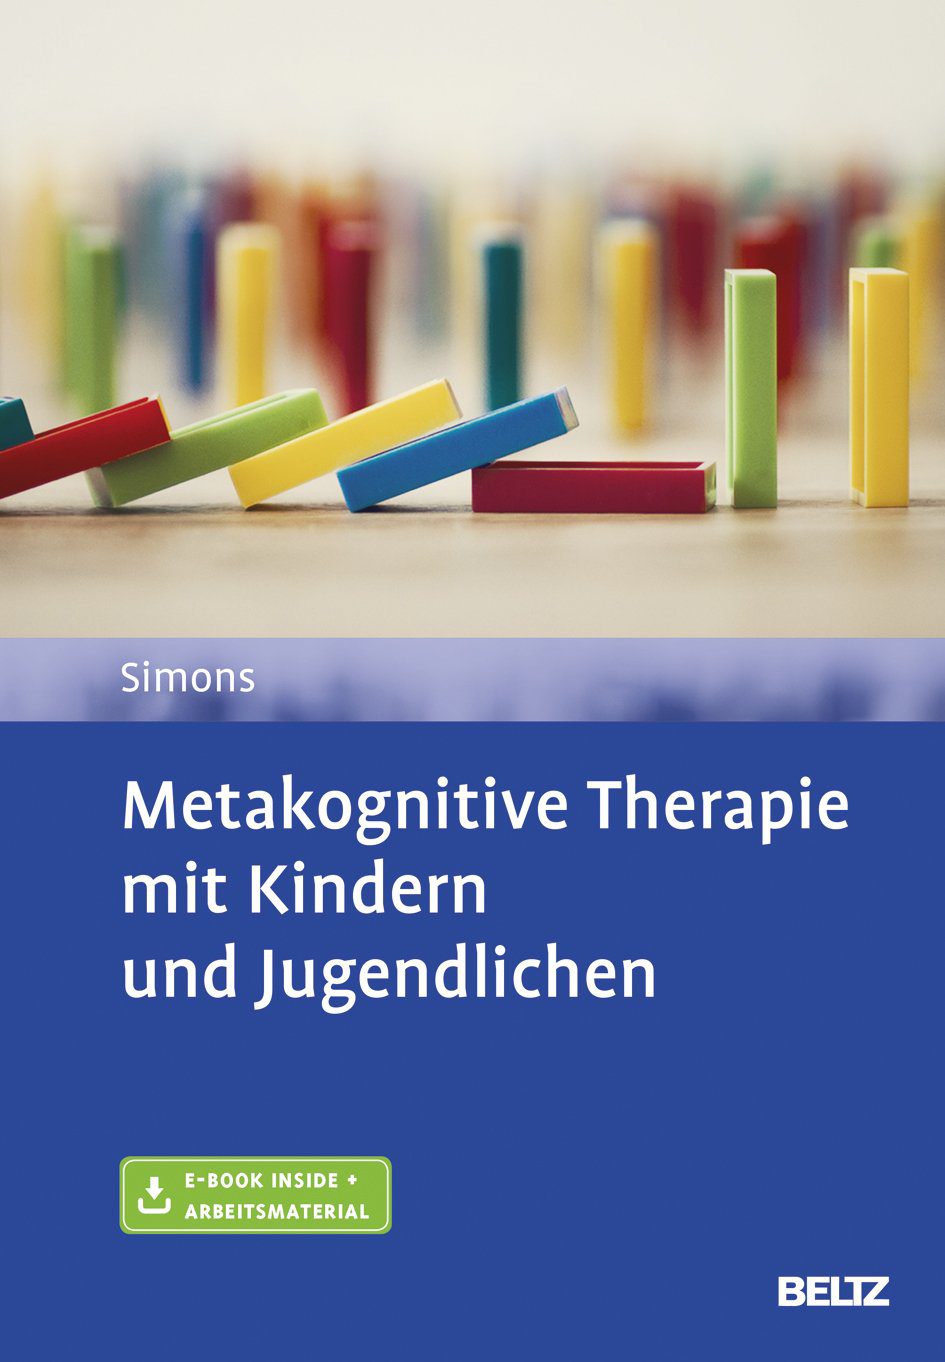 Buch: Metakognitive Therapie mit Kindern und Jugendlichen (Amazon*)